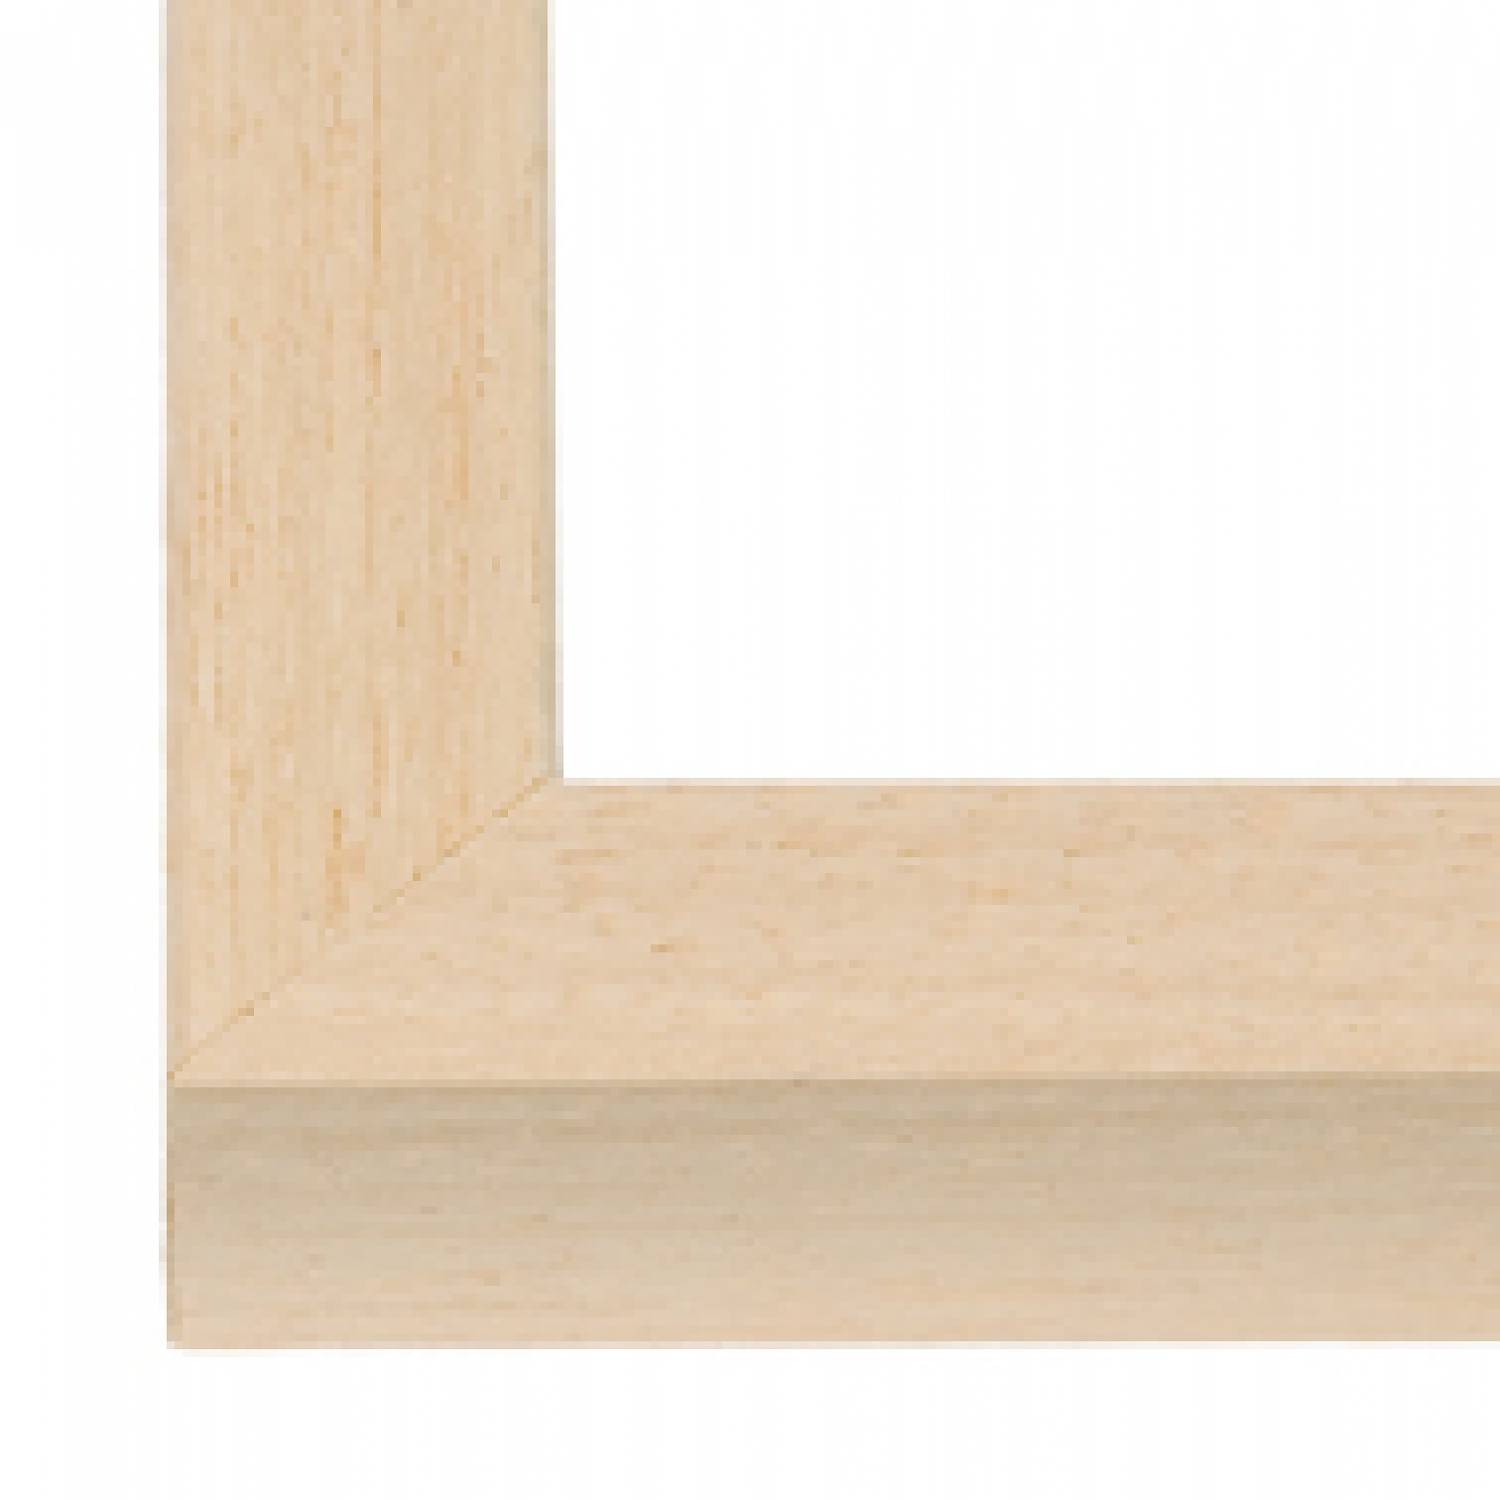 Blank houten wissellijsten 15 mm brede lijst - De Lijstenfabriek B.V.